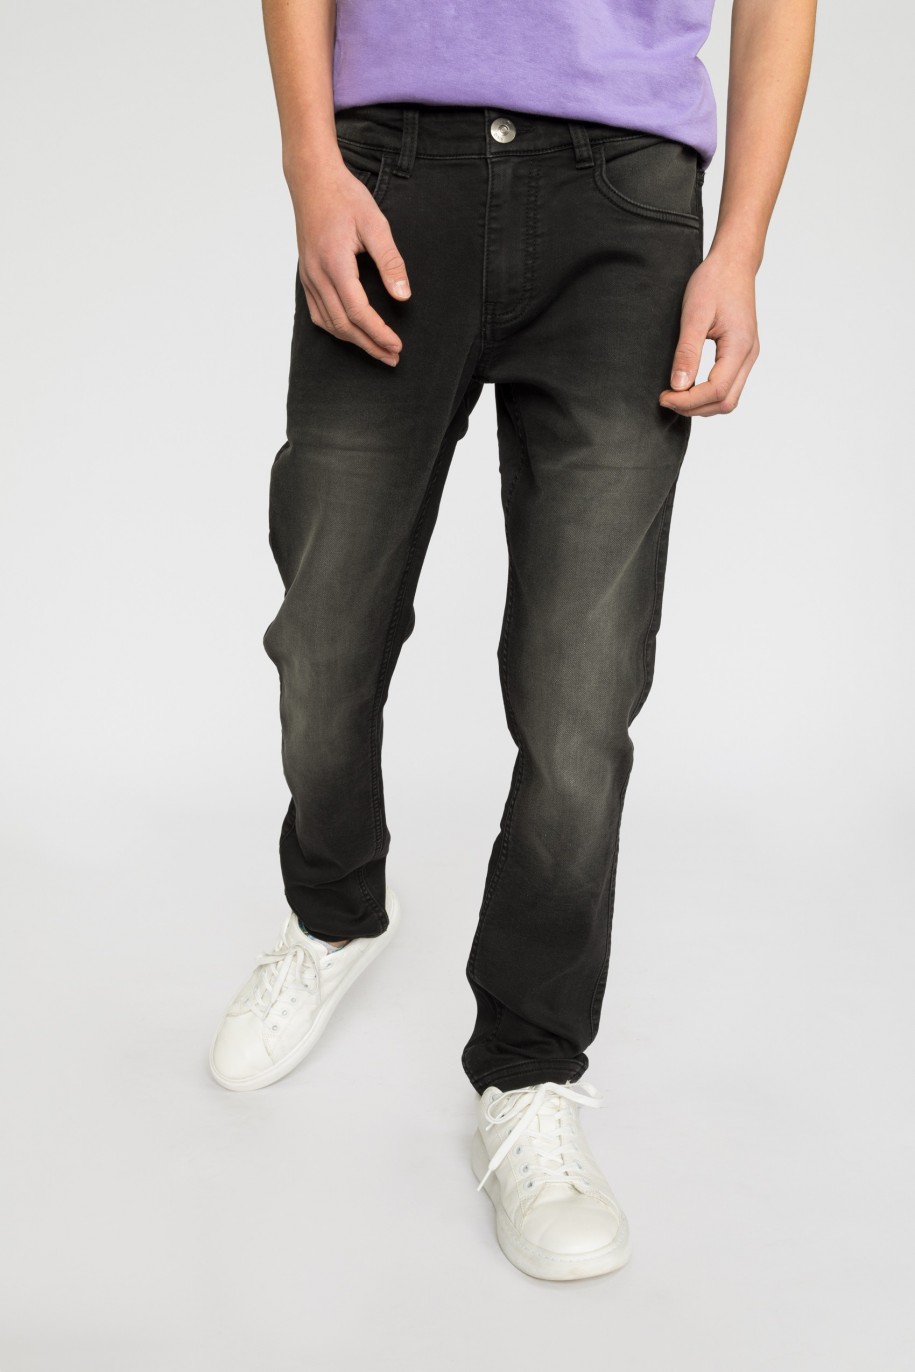 Czarne jeansowe spodnie dla chłopaka - 32098